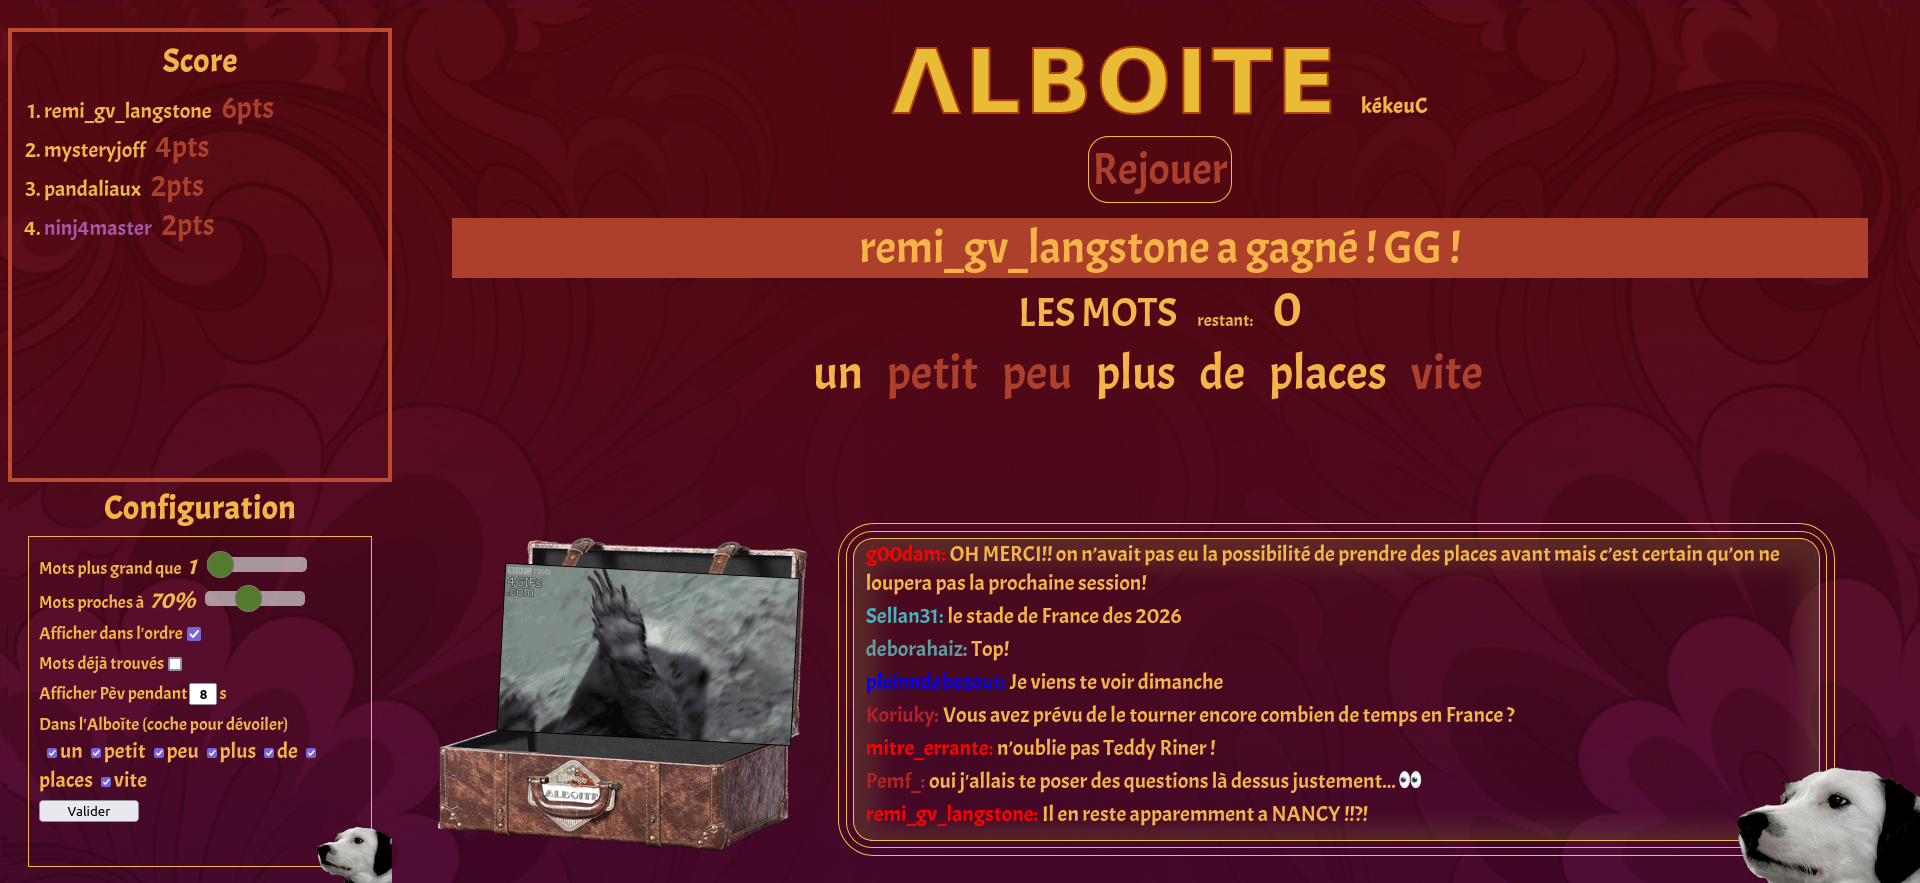 Alboite